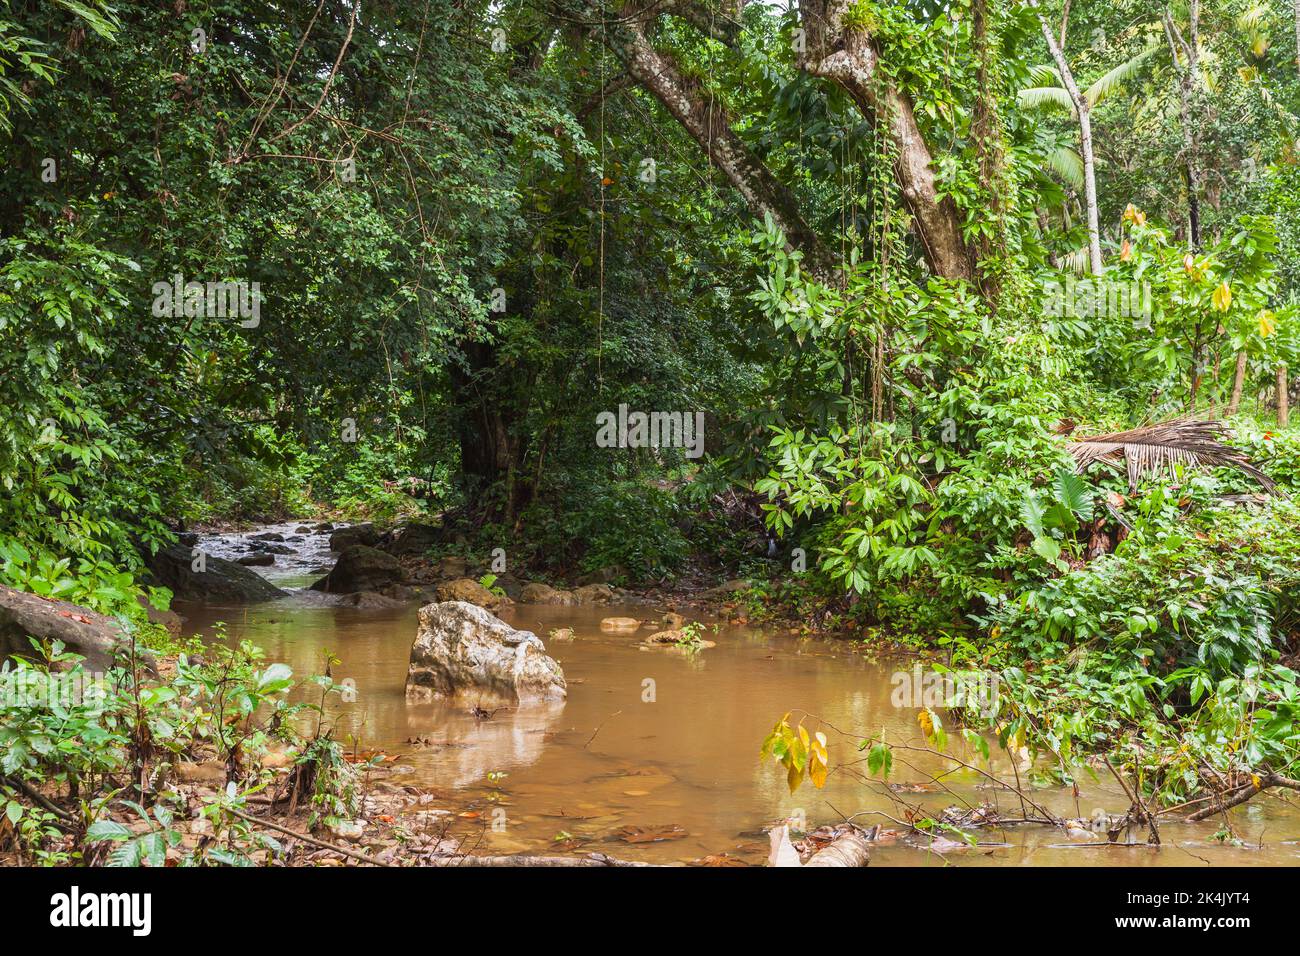 Tropische Landschaft mit einem schlammigen Fluss, der durch dunklen Regenwald fließt. Samana, Dominikanische Republik Stockfoto